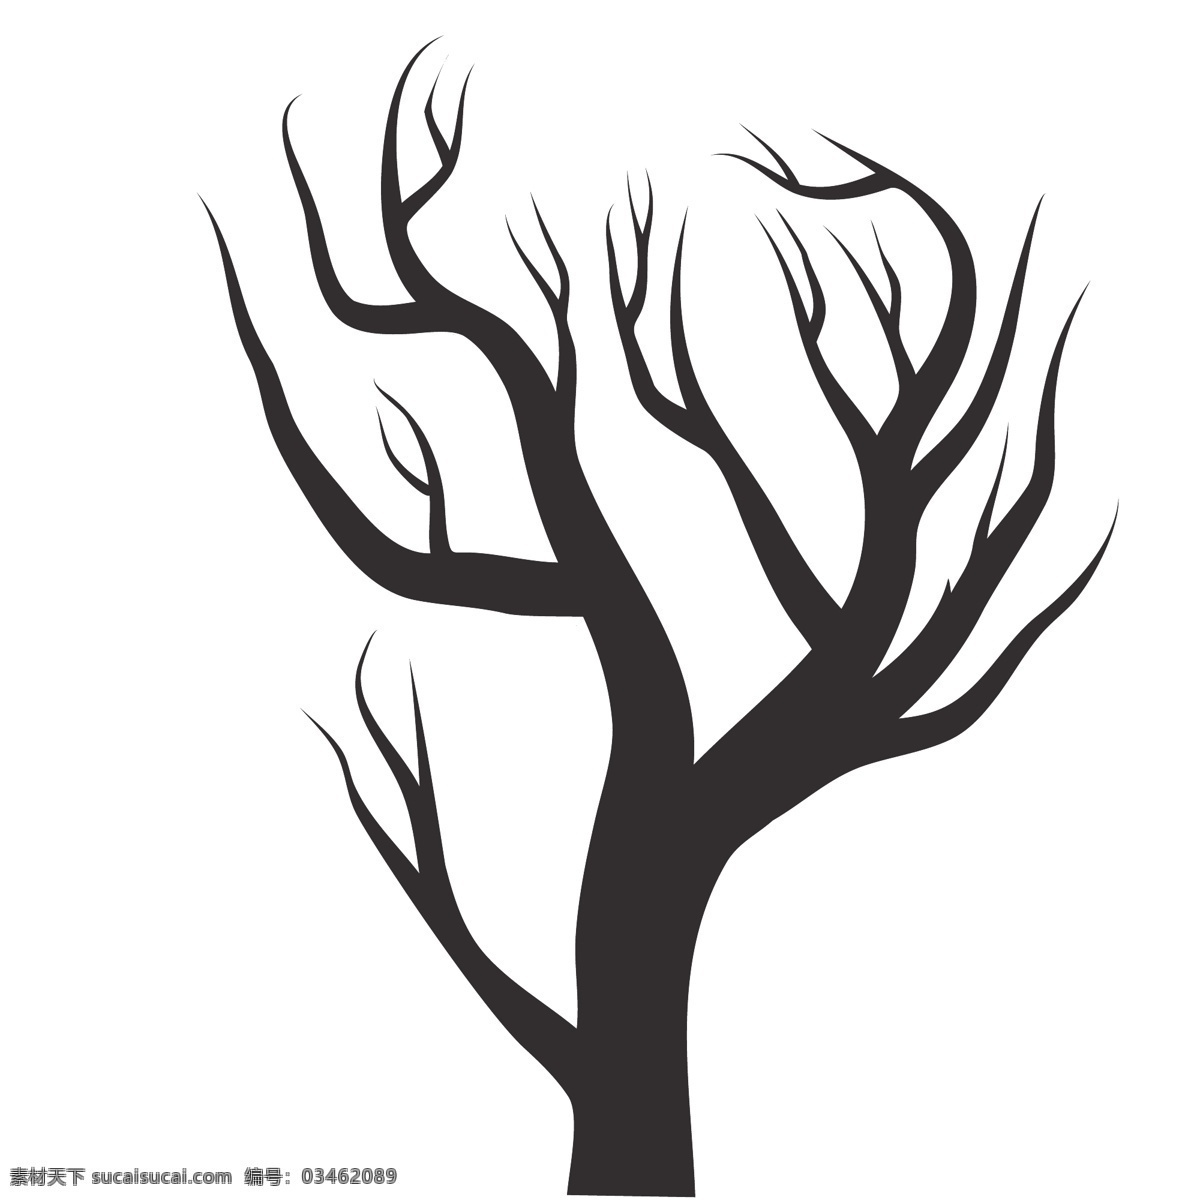 黑色 植物 树木 剪影 树枝 树干 涂鸦 图案 简约 绘画 树叶 树苗 素描